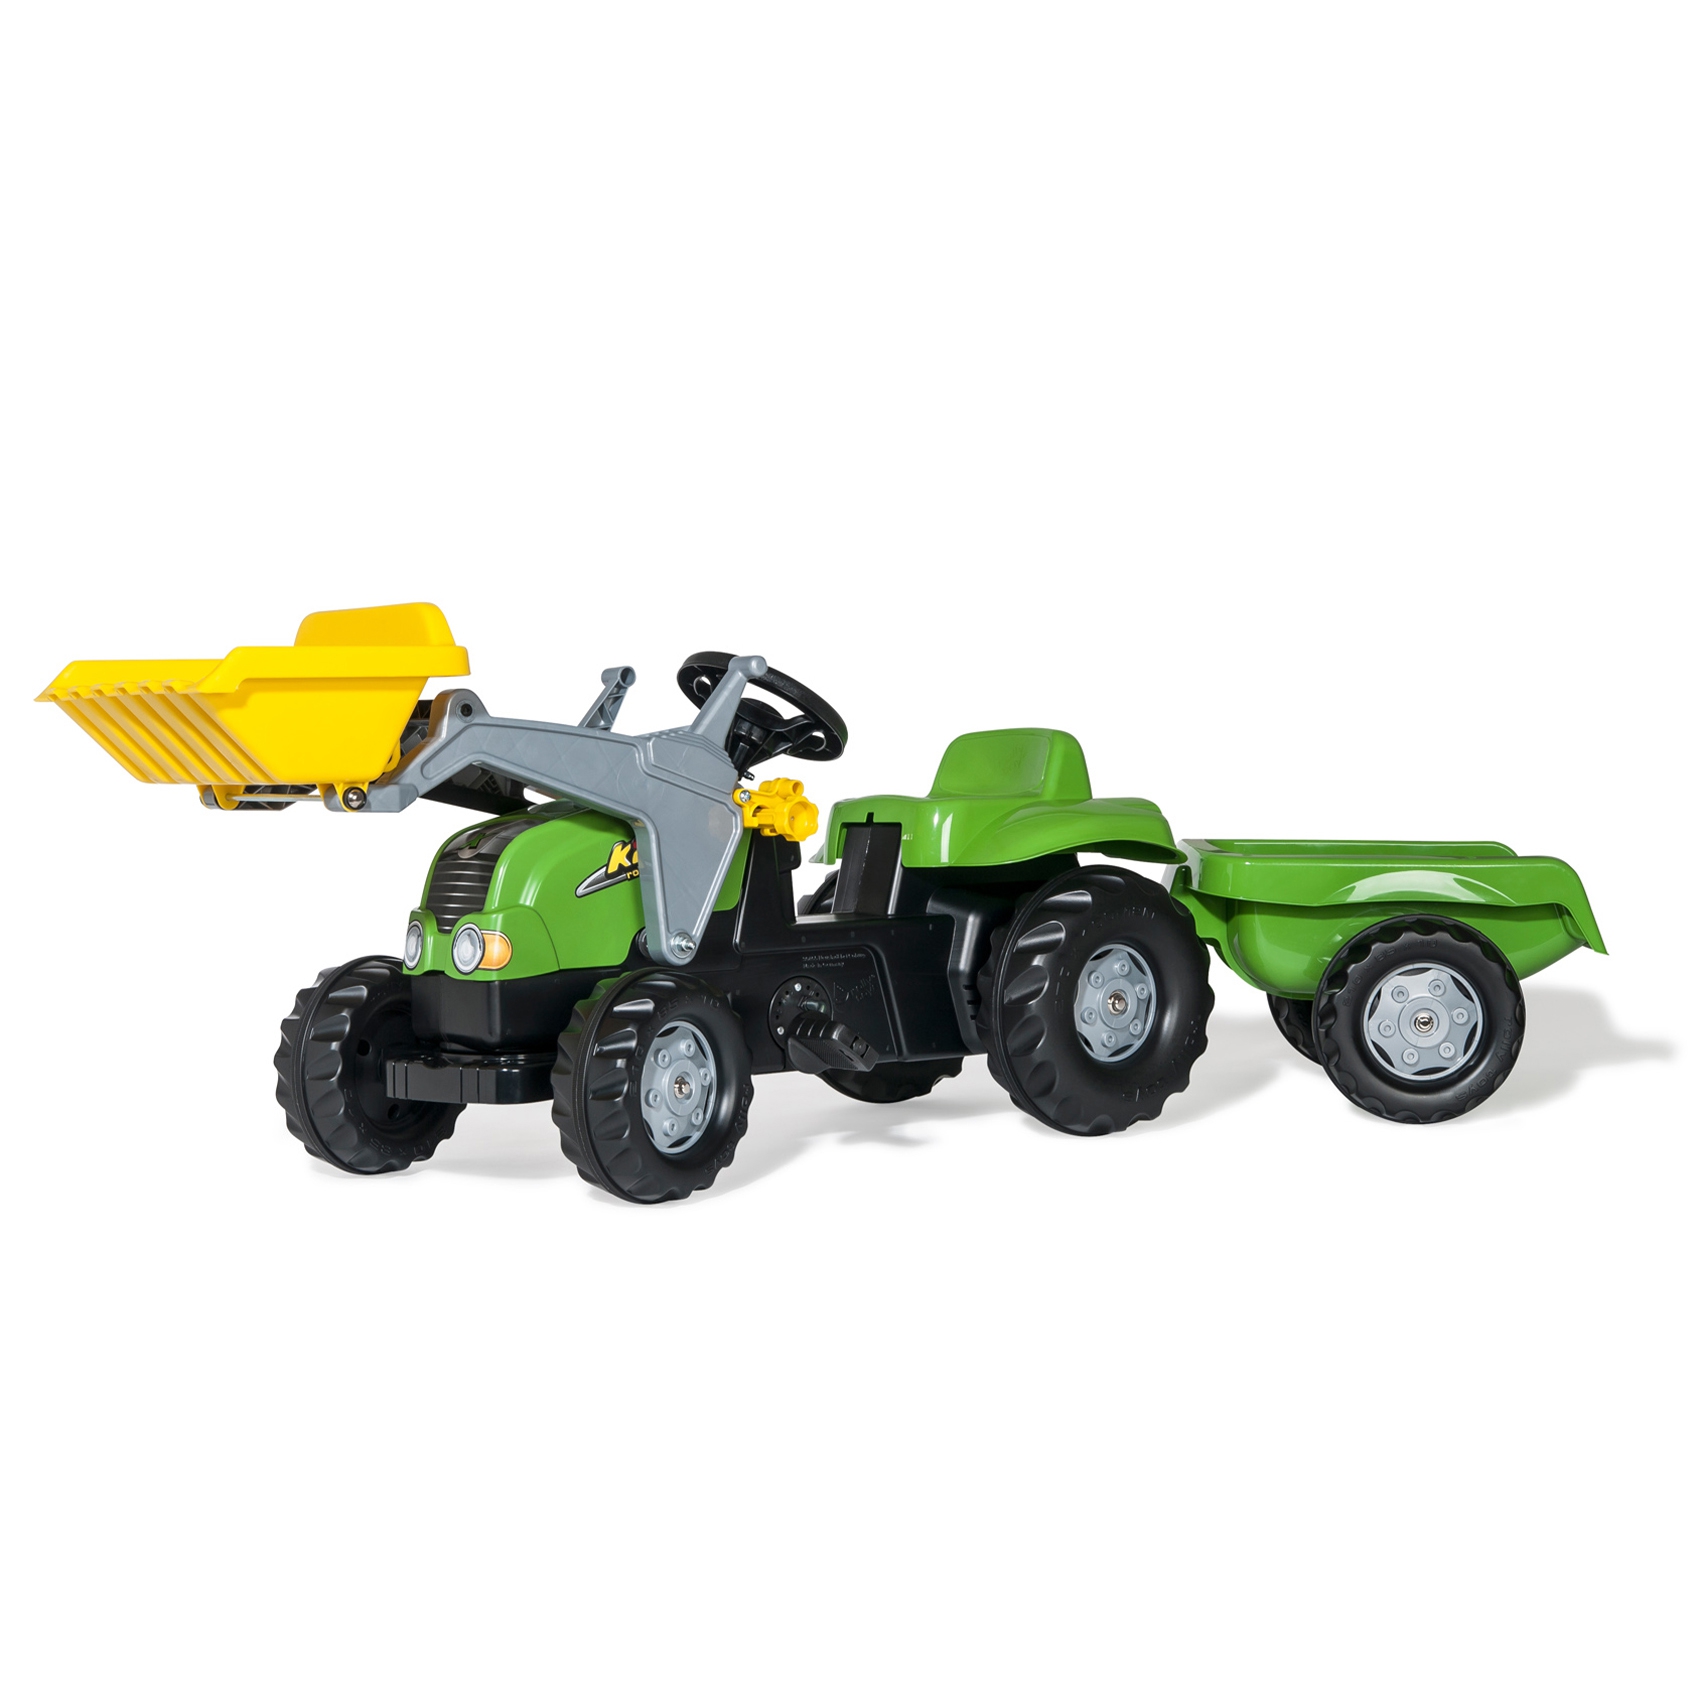 Rollykid traktor na pedały z łyżką i przyczepą, zabawka dla dzieci, Rolly Toys